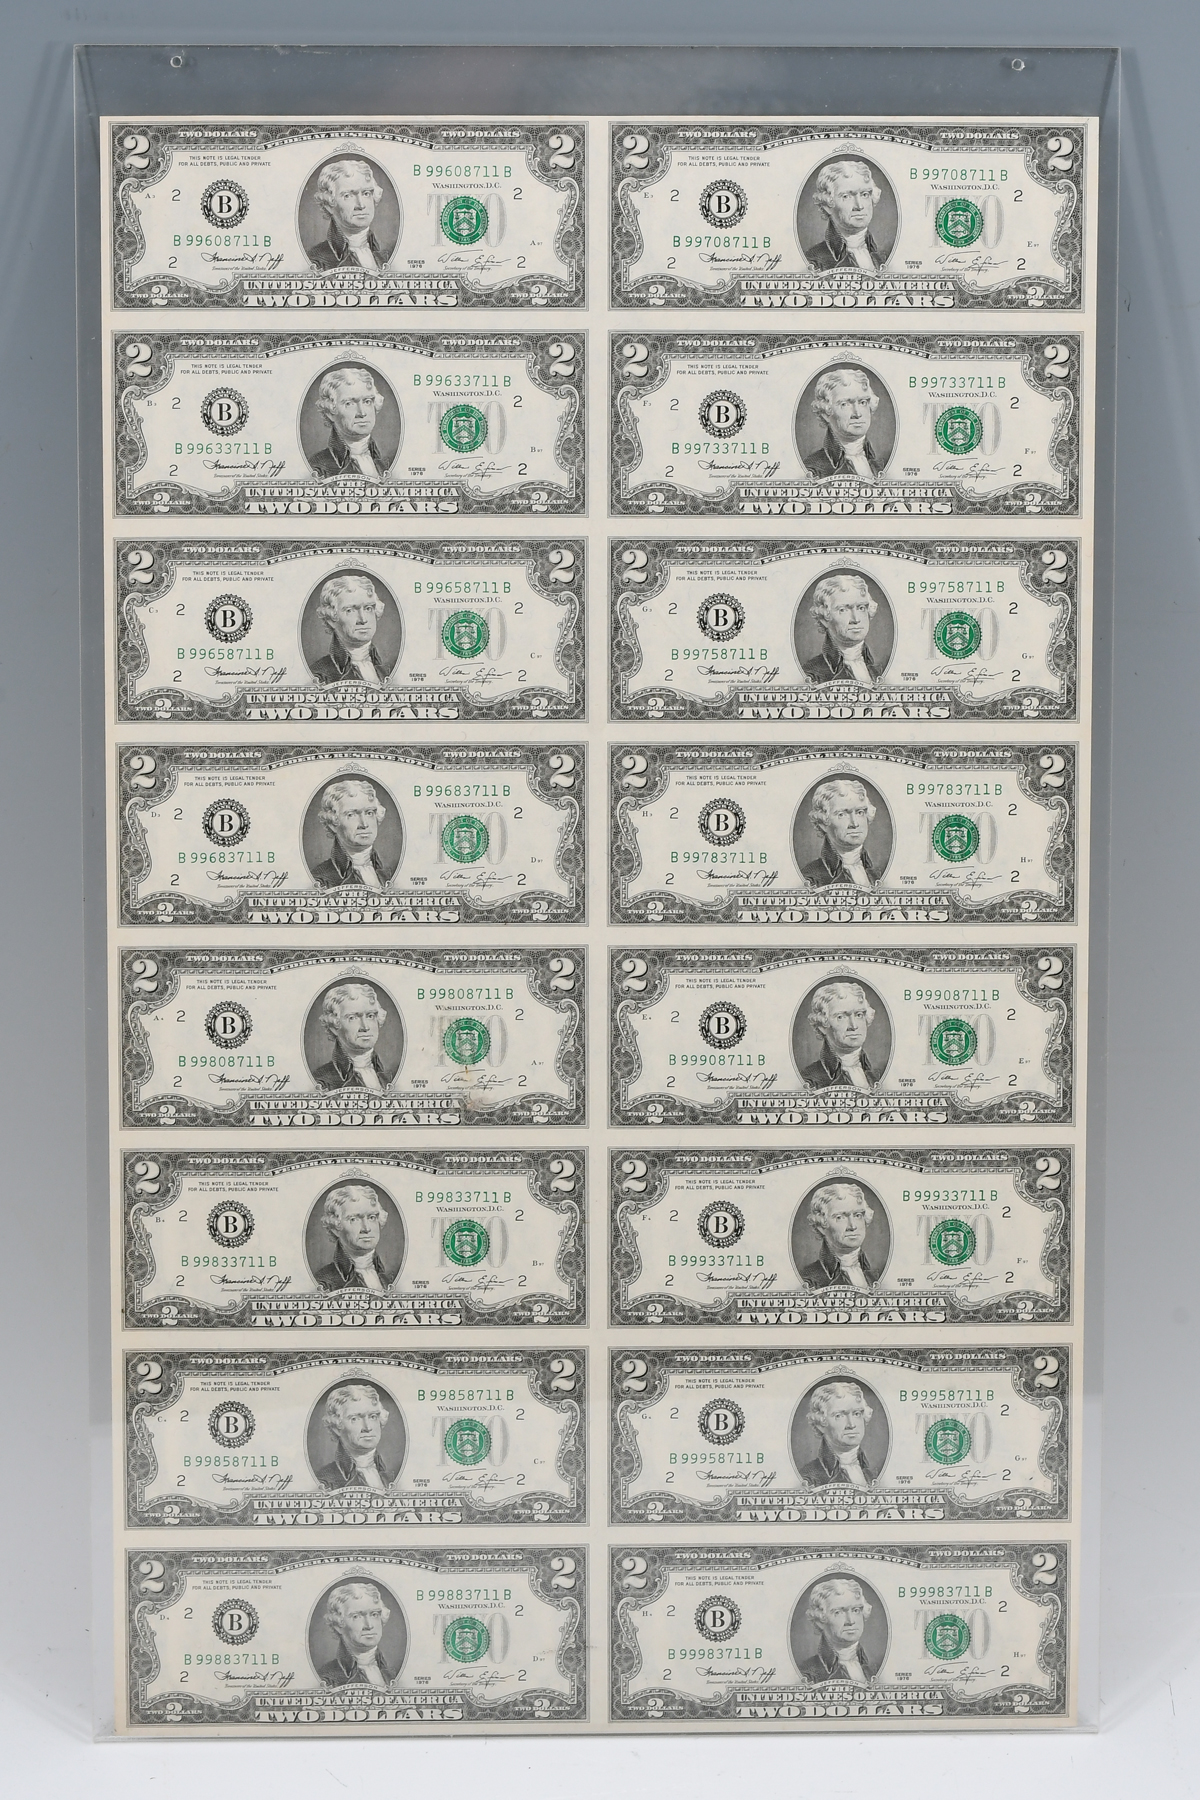 UNCUT SHEET OF $2 BILLS: A sheet of